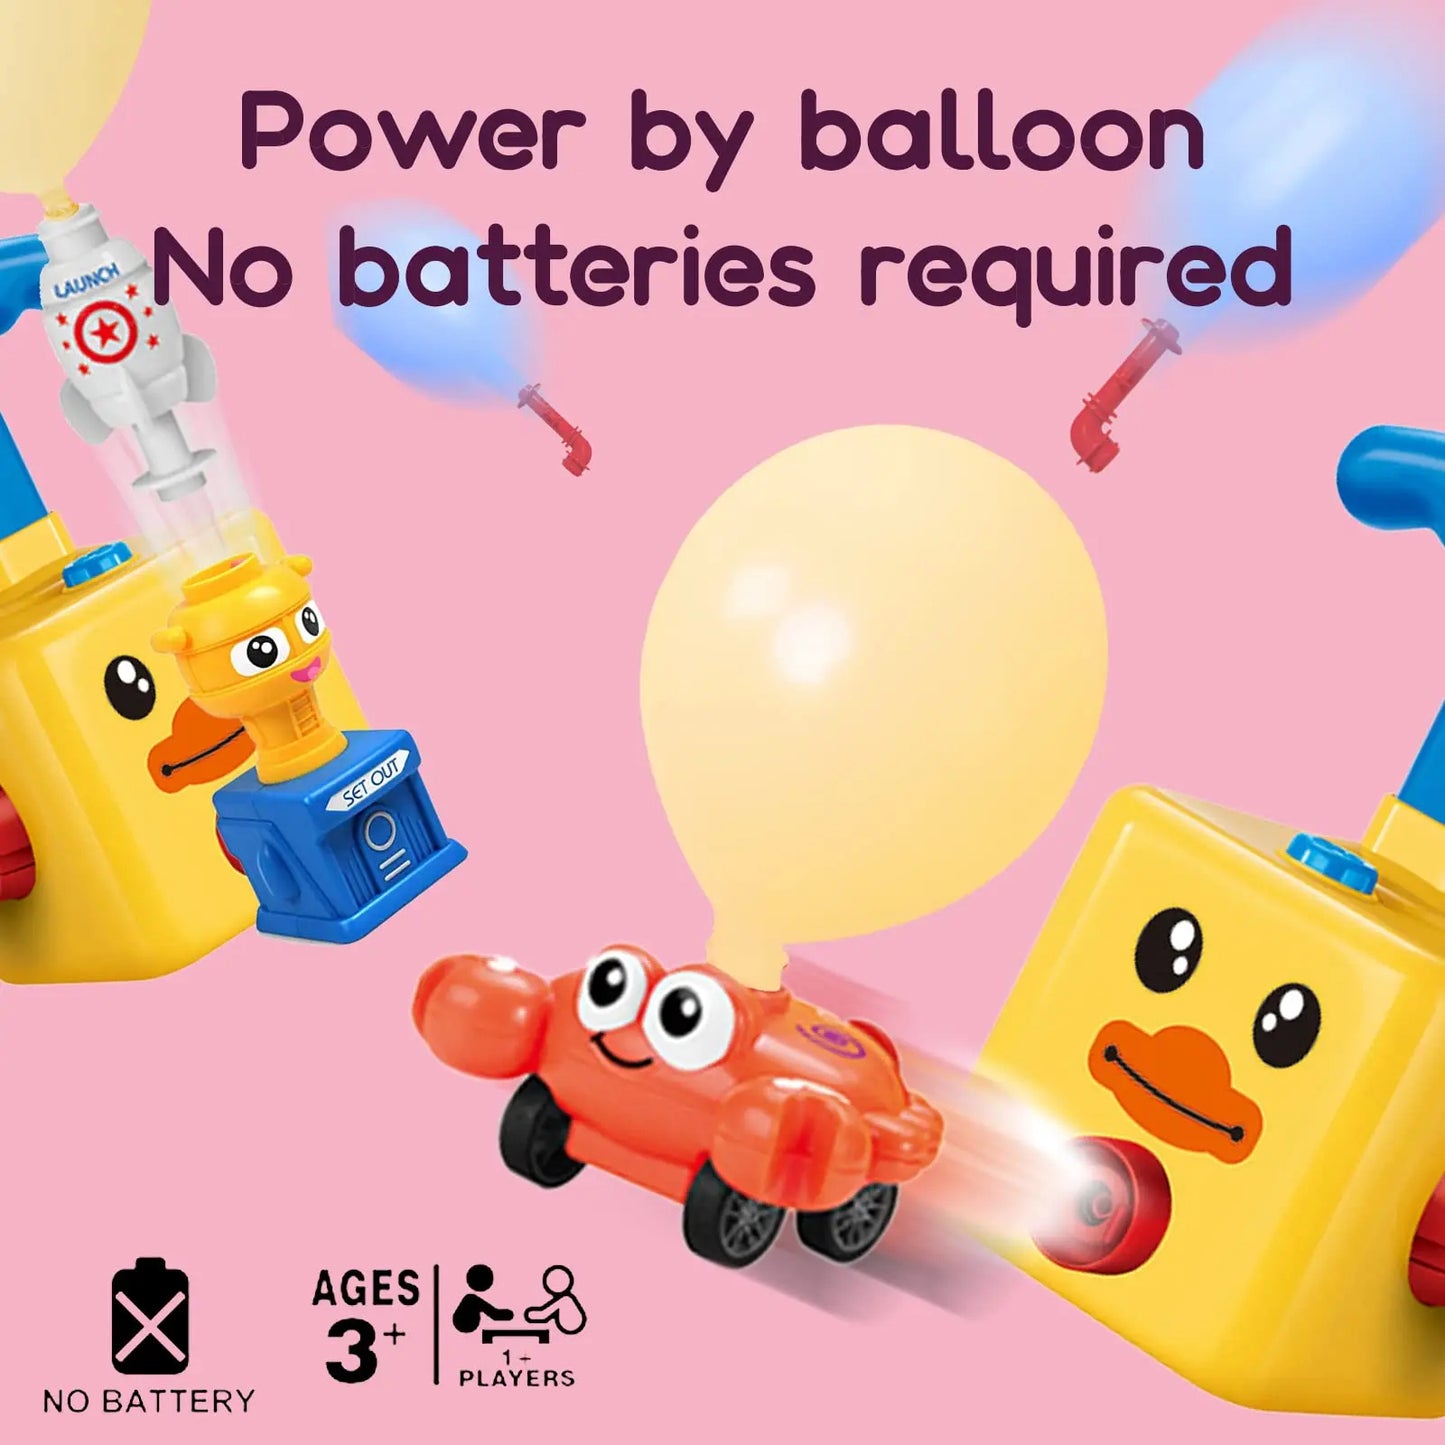 Balloon Launcher Children's Toy